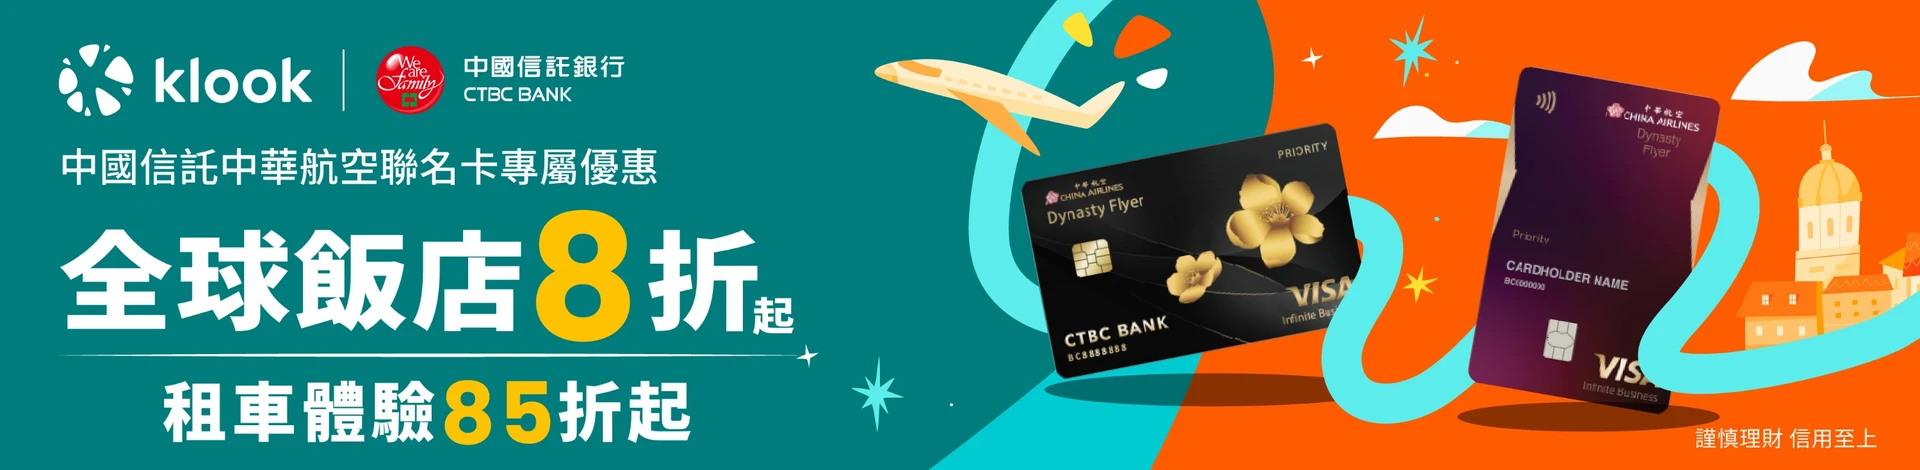 Klook信用卡優惠中信華航無限卡